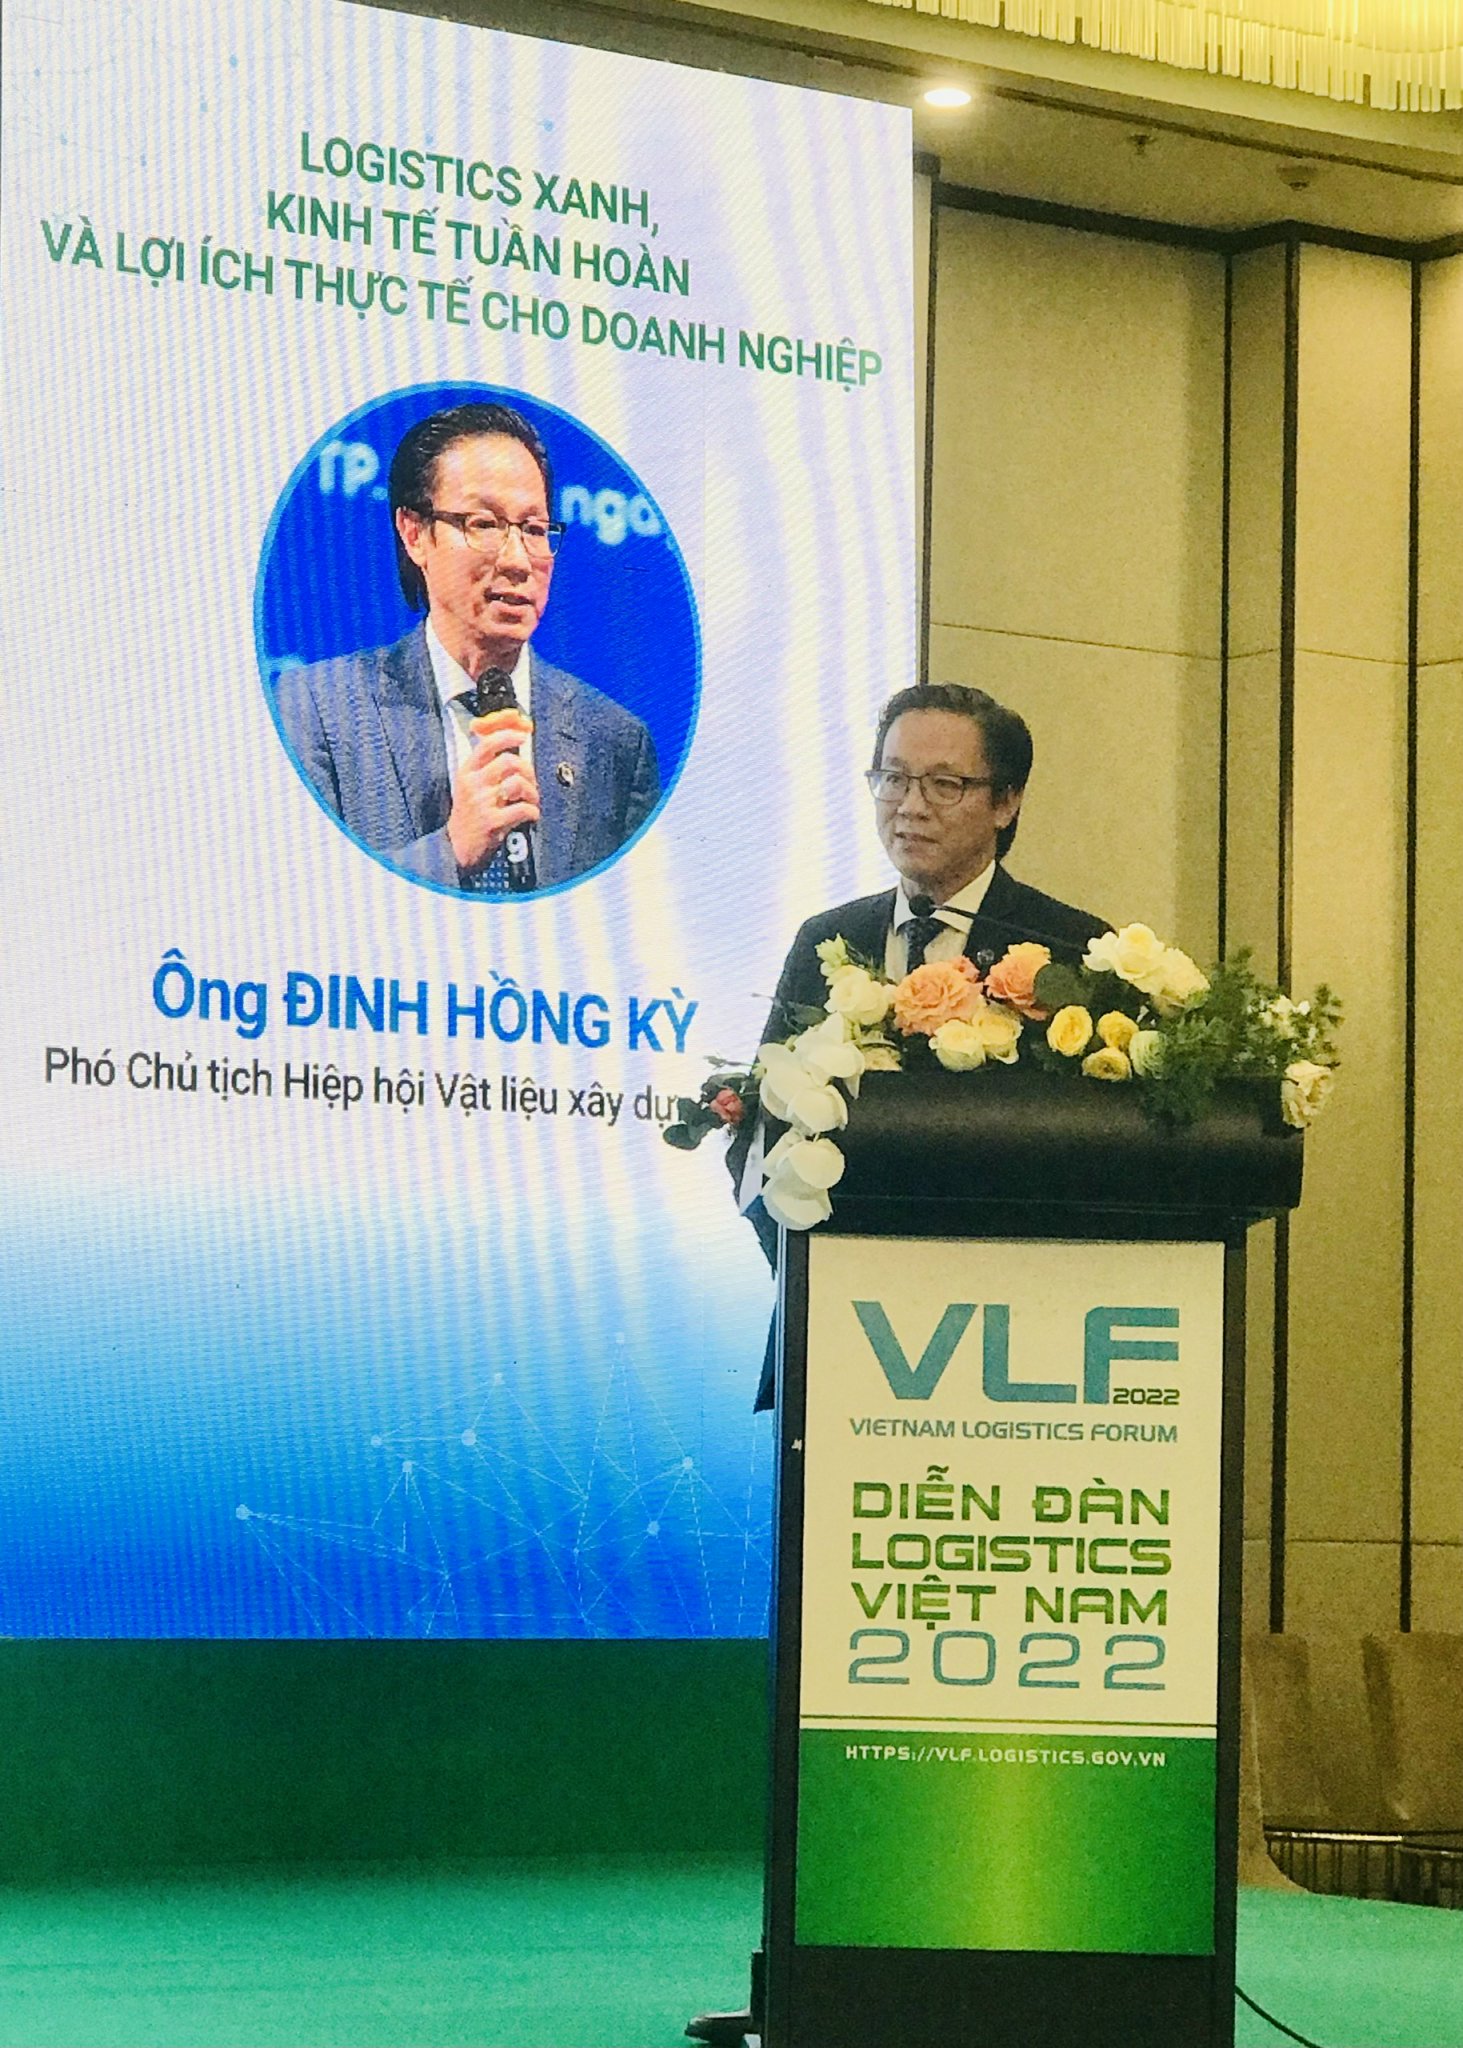 Ông Đinh Hồng Kỳ - Logistics xanh, kinh tế tuần hoàn và lợi ích thực tế cho doanh nghiệp